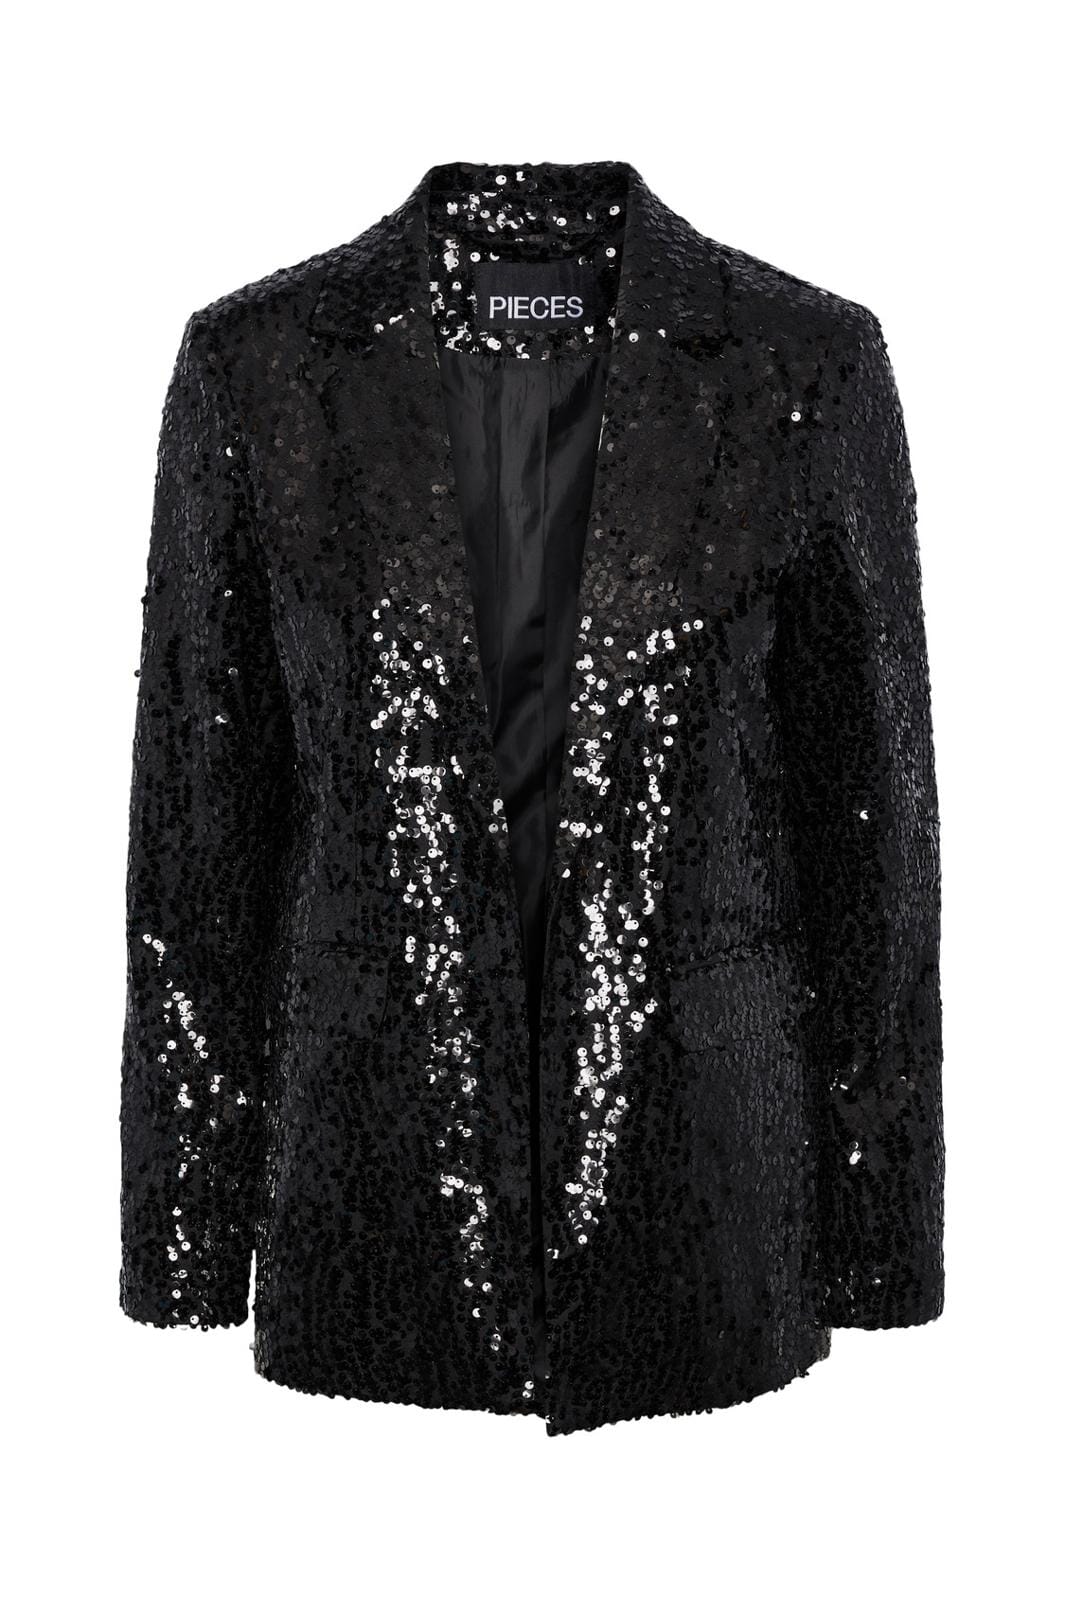 Pieces, Pcbossy Sequin Blazer, Black